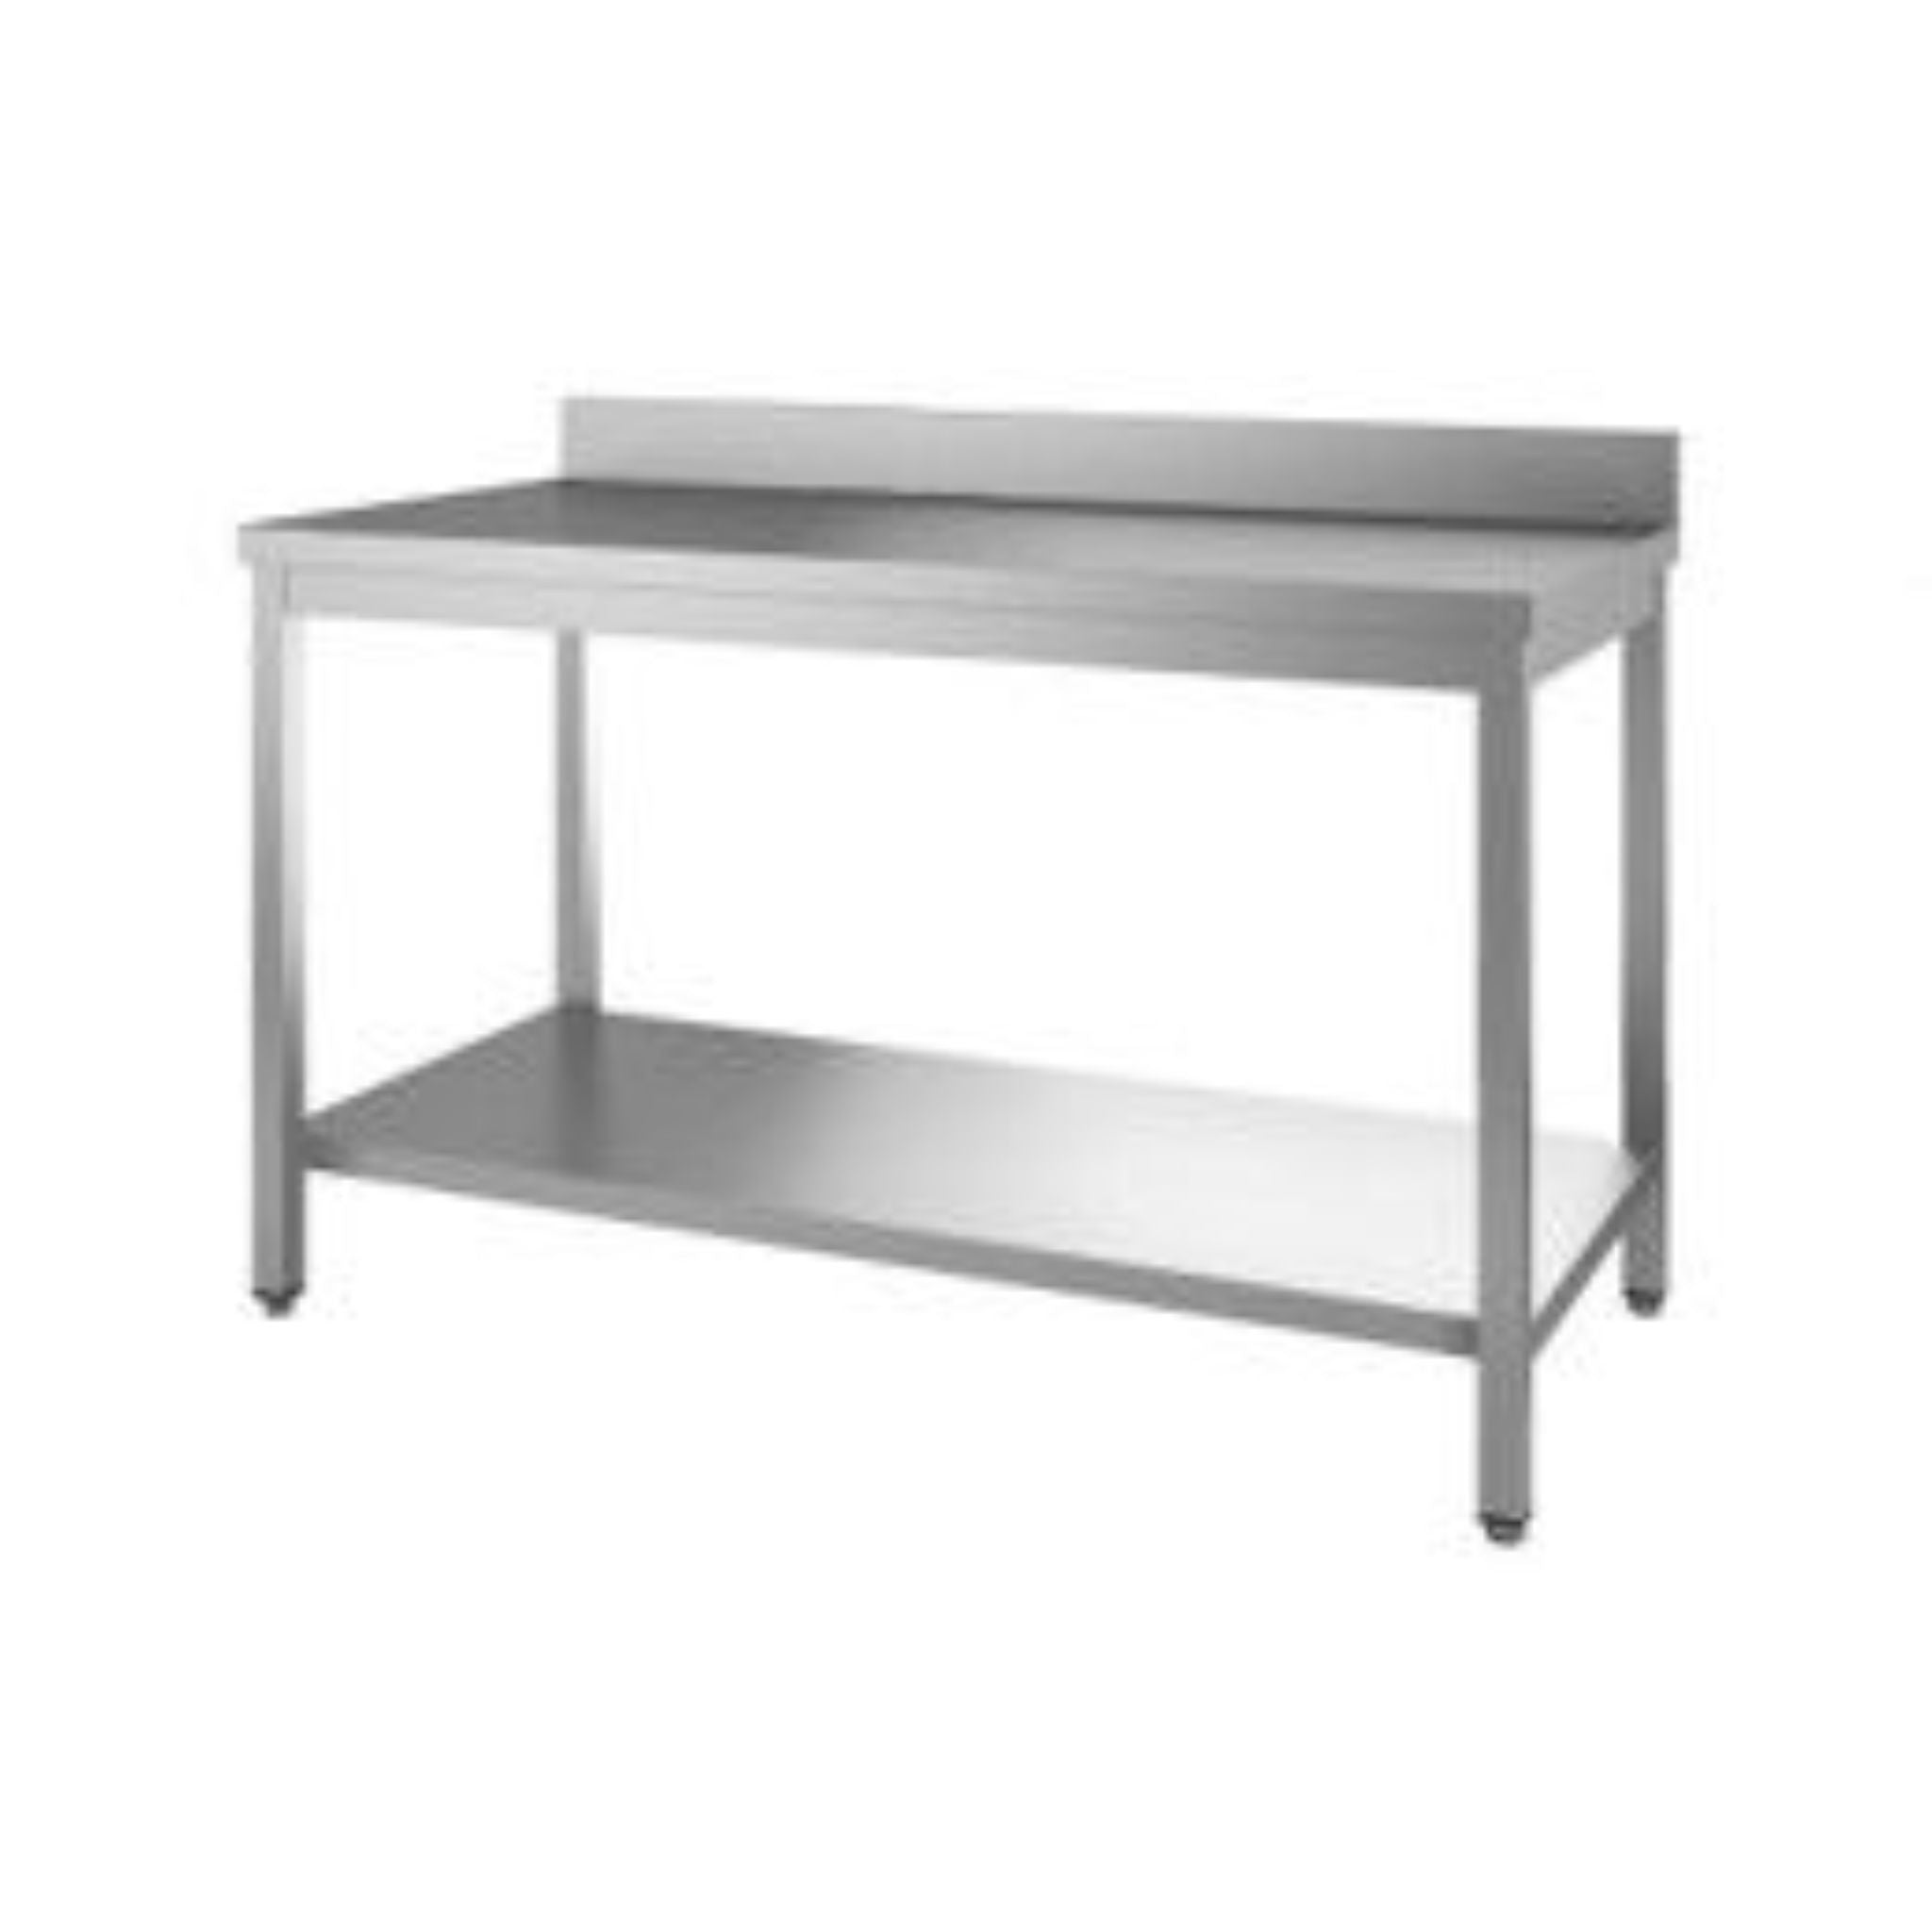 Standard stainless steel worktable - 0